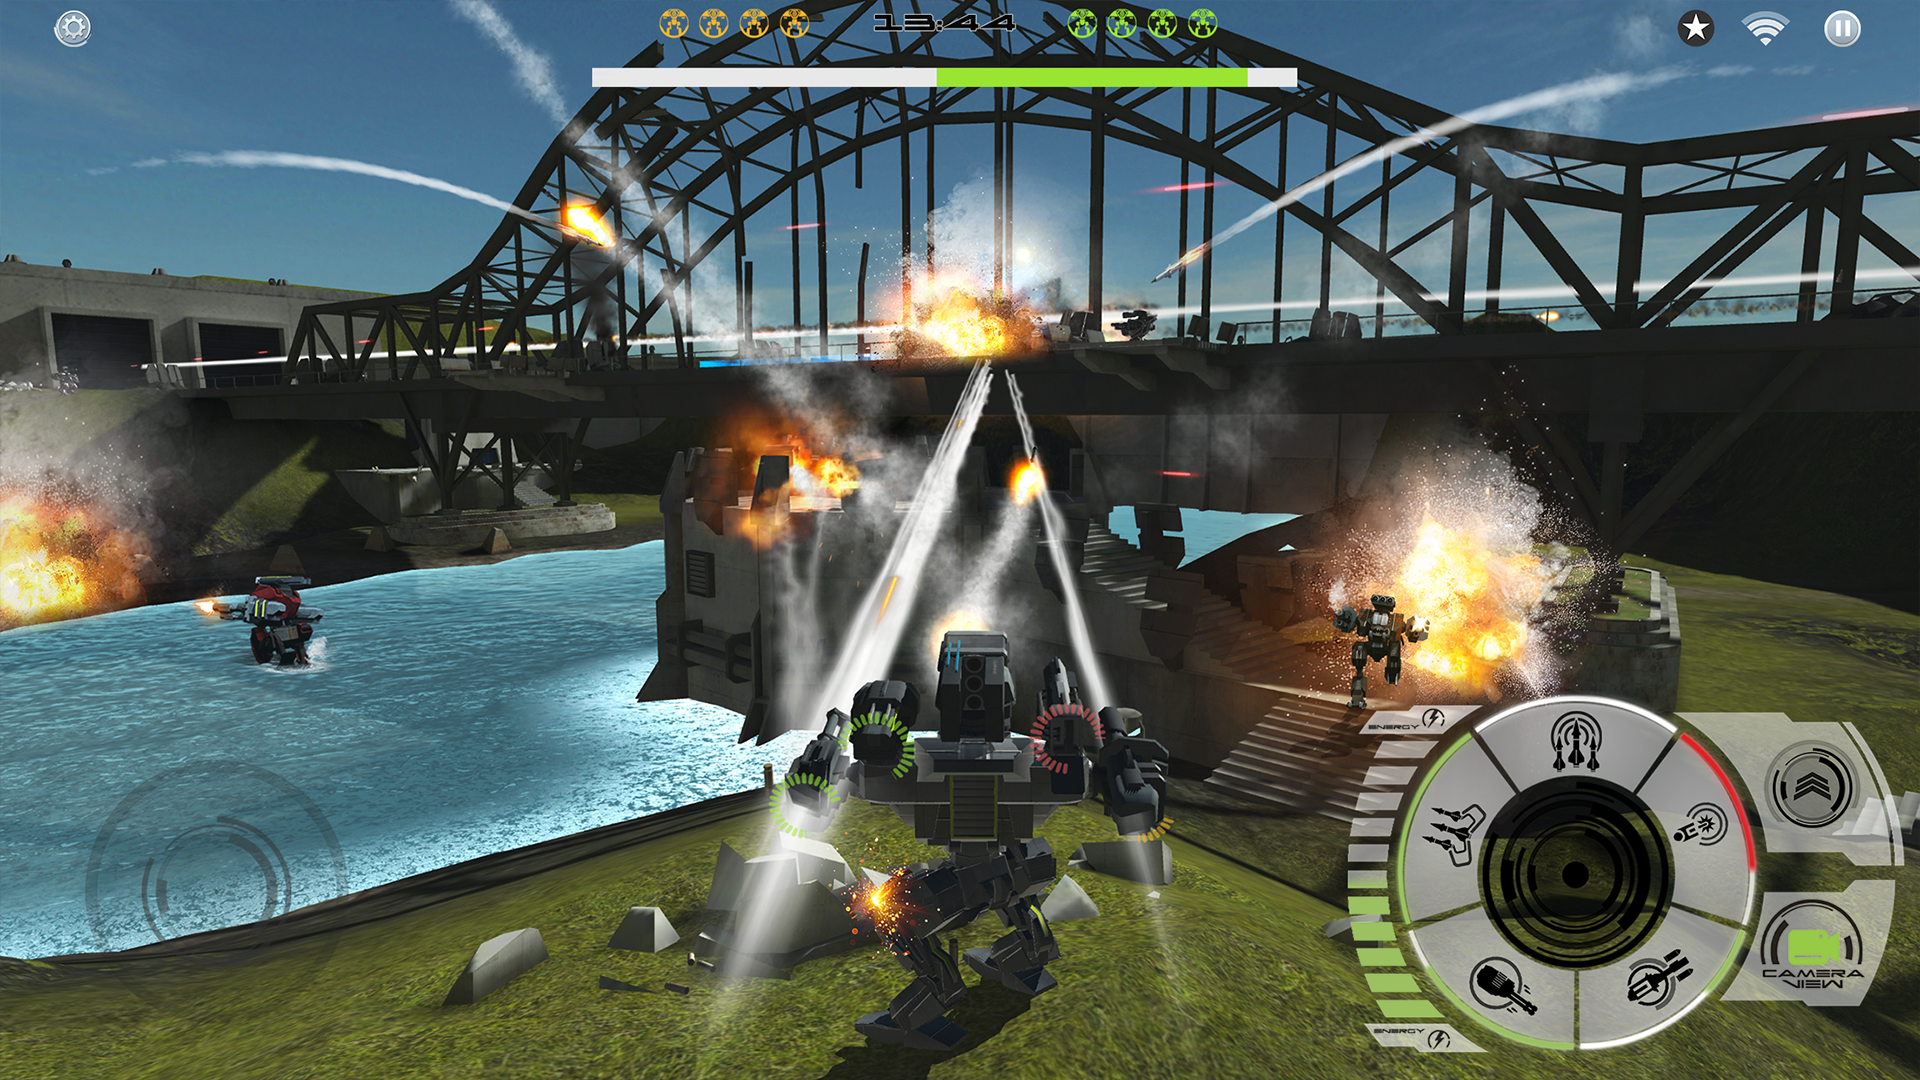 Screenshot 1 of Mech Battle - Jeu de guerre de robots 4.1.6